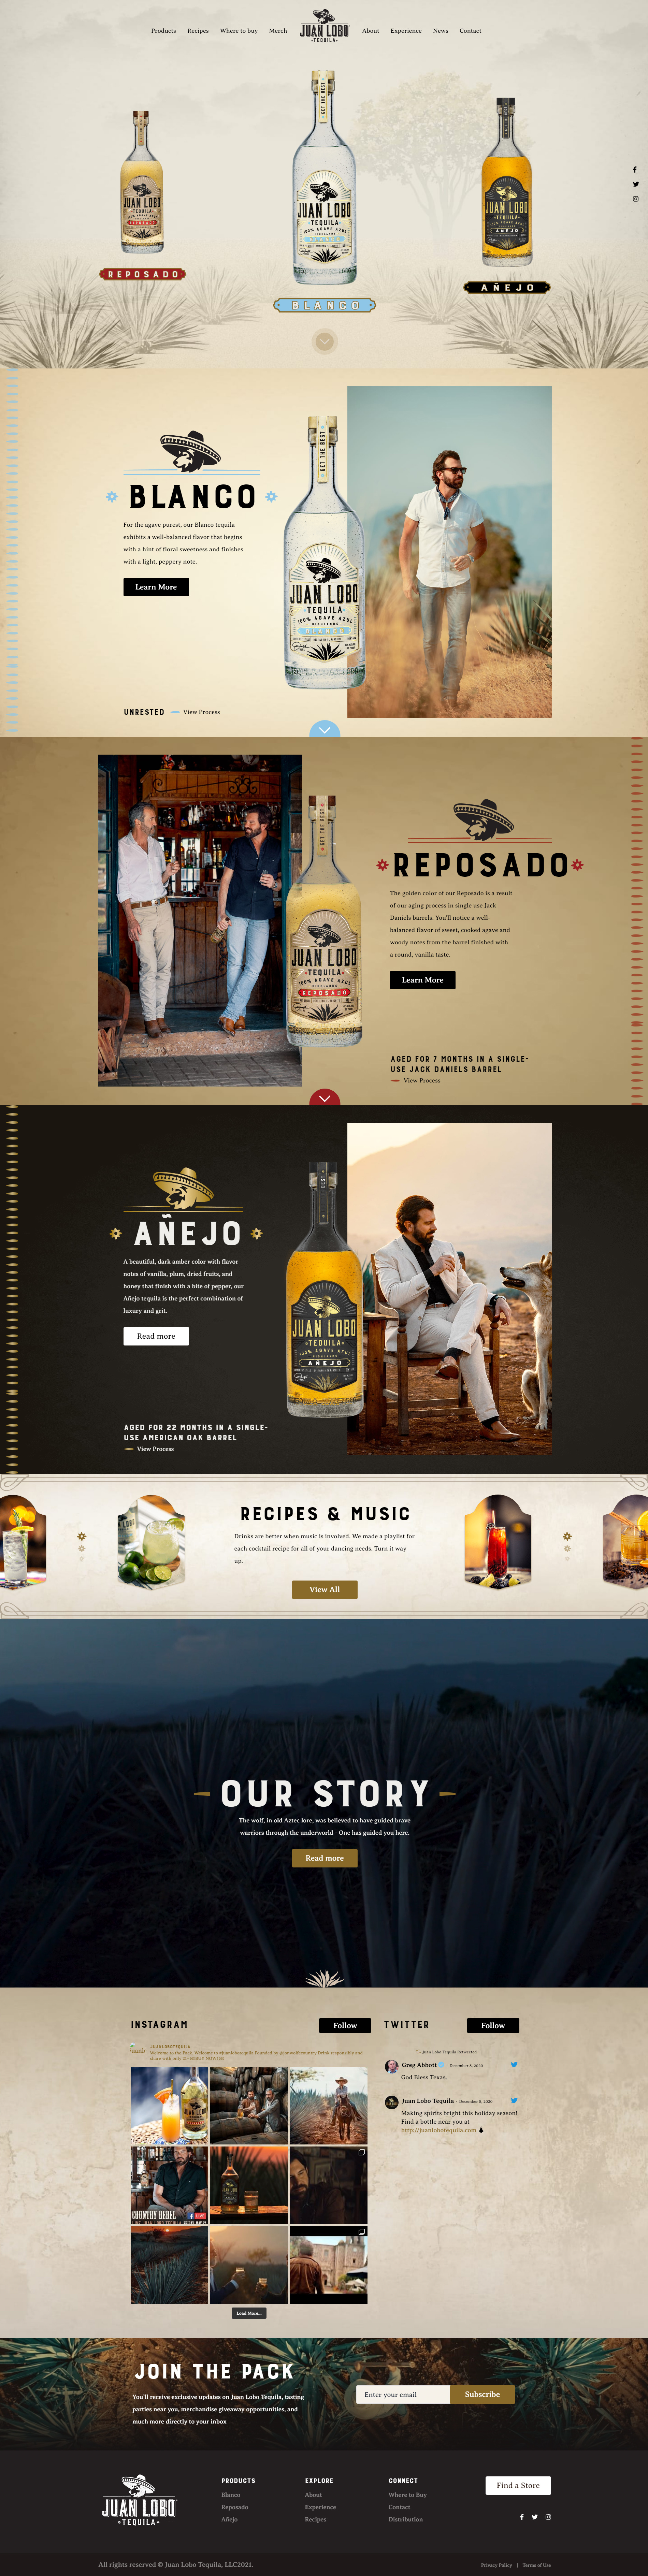 JUAN LOBO TEQUILA龙舌兰酒网站设计